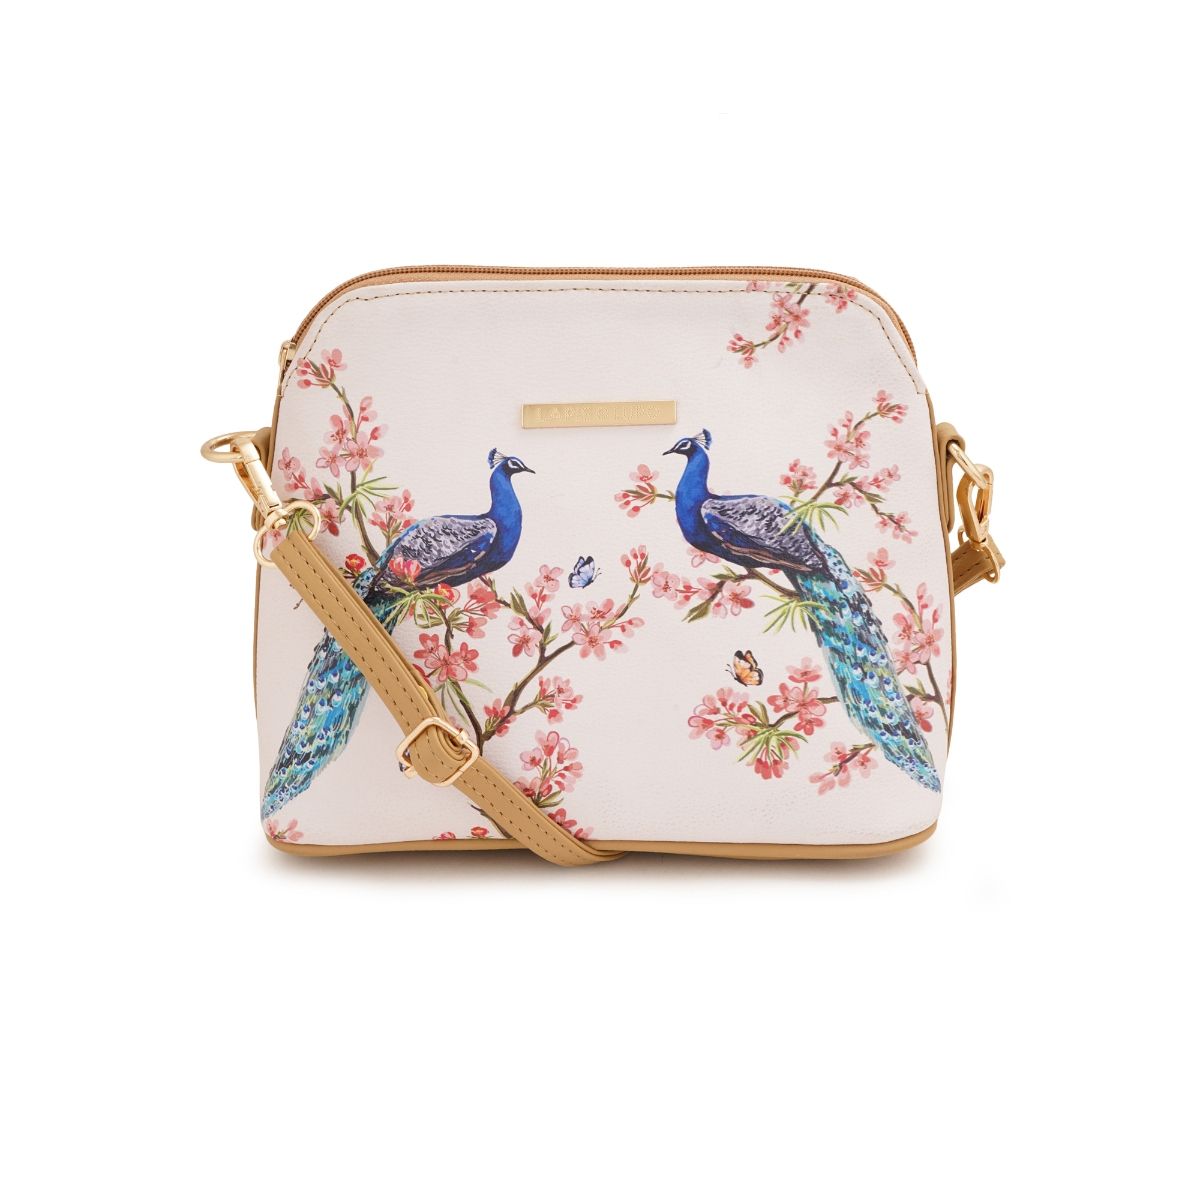 Buy Brown Handbags for Women by Golden Peacock Online | Ajio.com